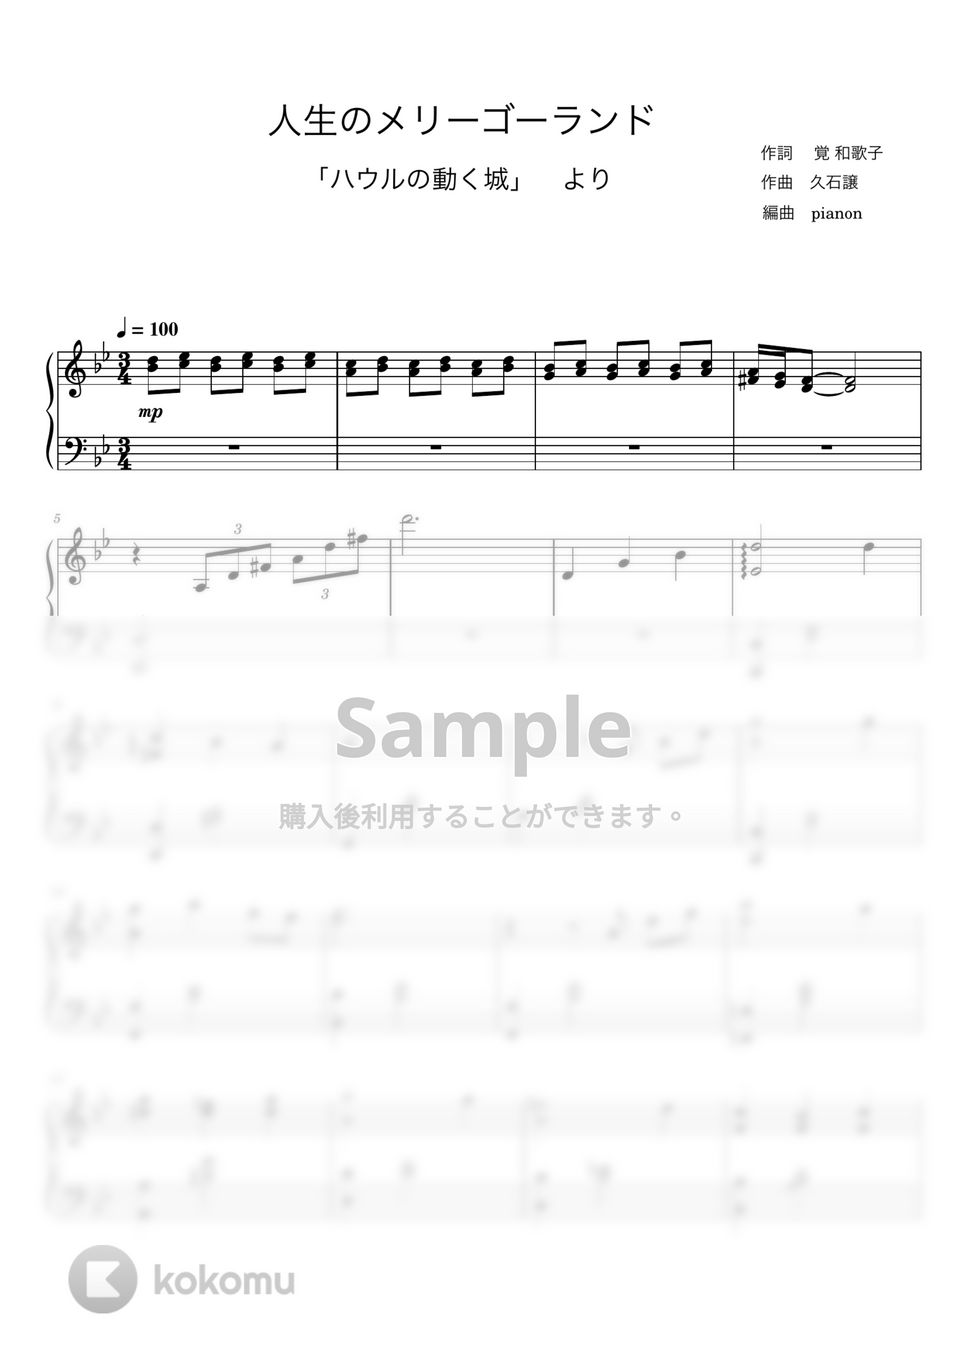 久石譲 - 人生のメリーゴーランド (ピアノ中上級ソロ) by pianon